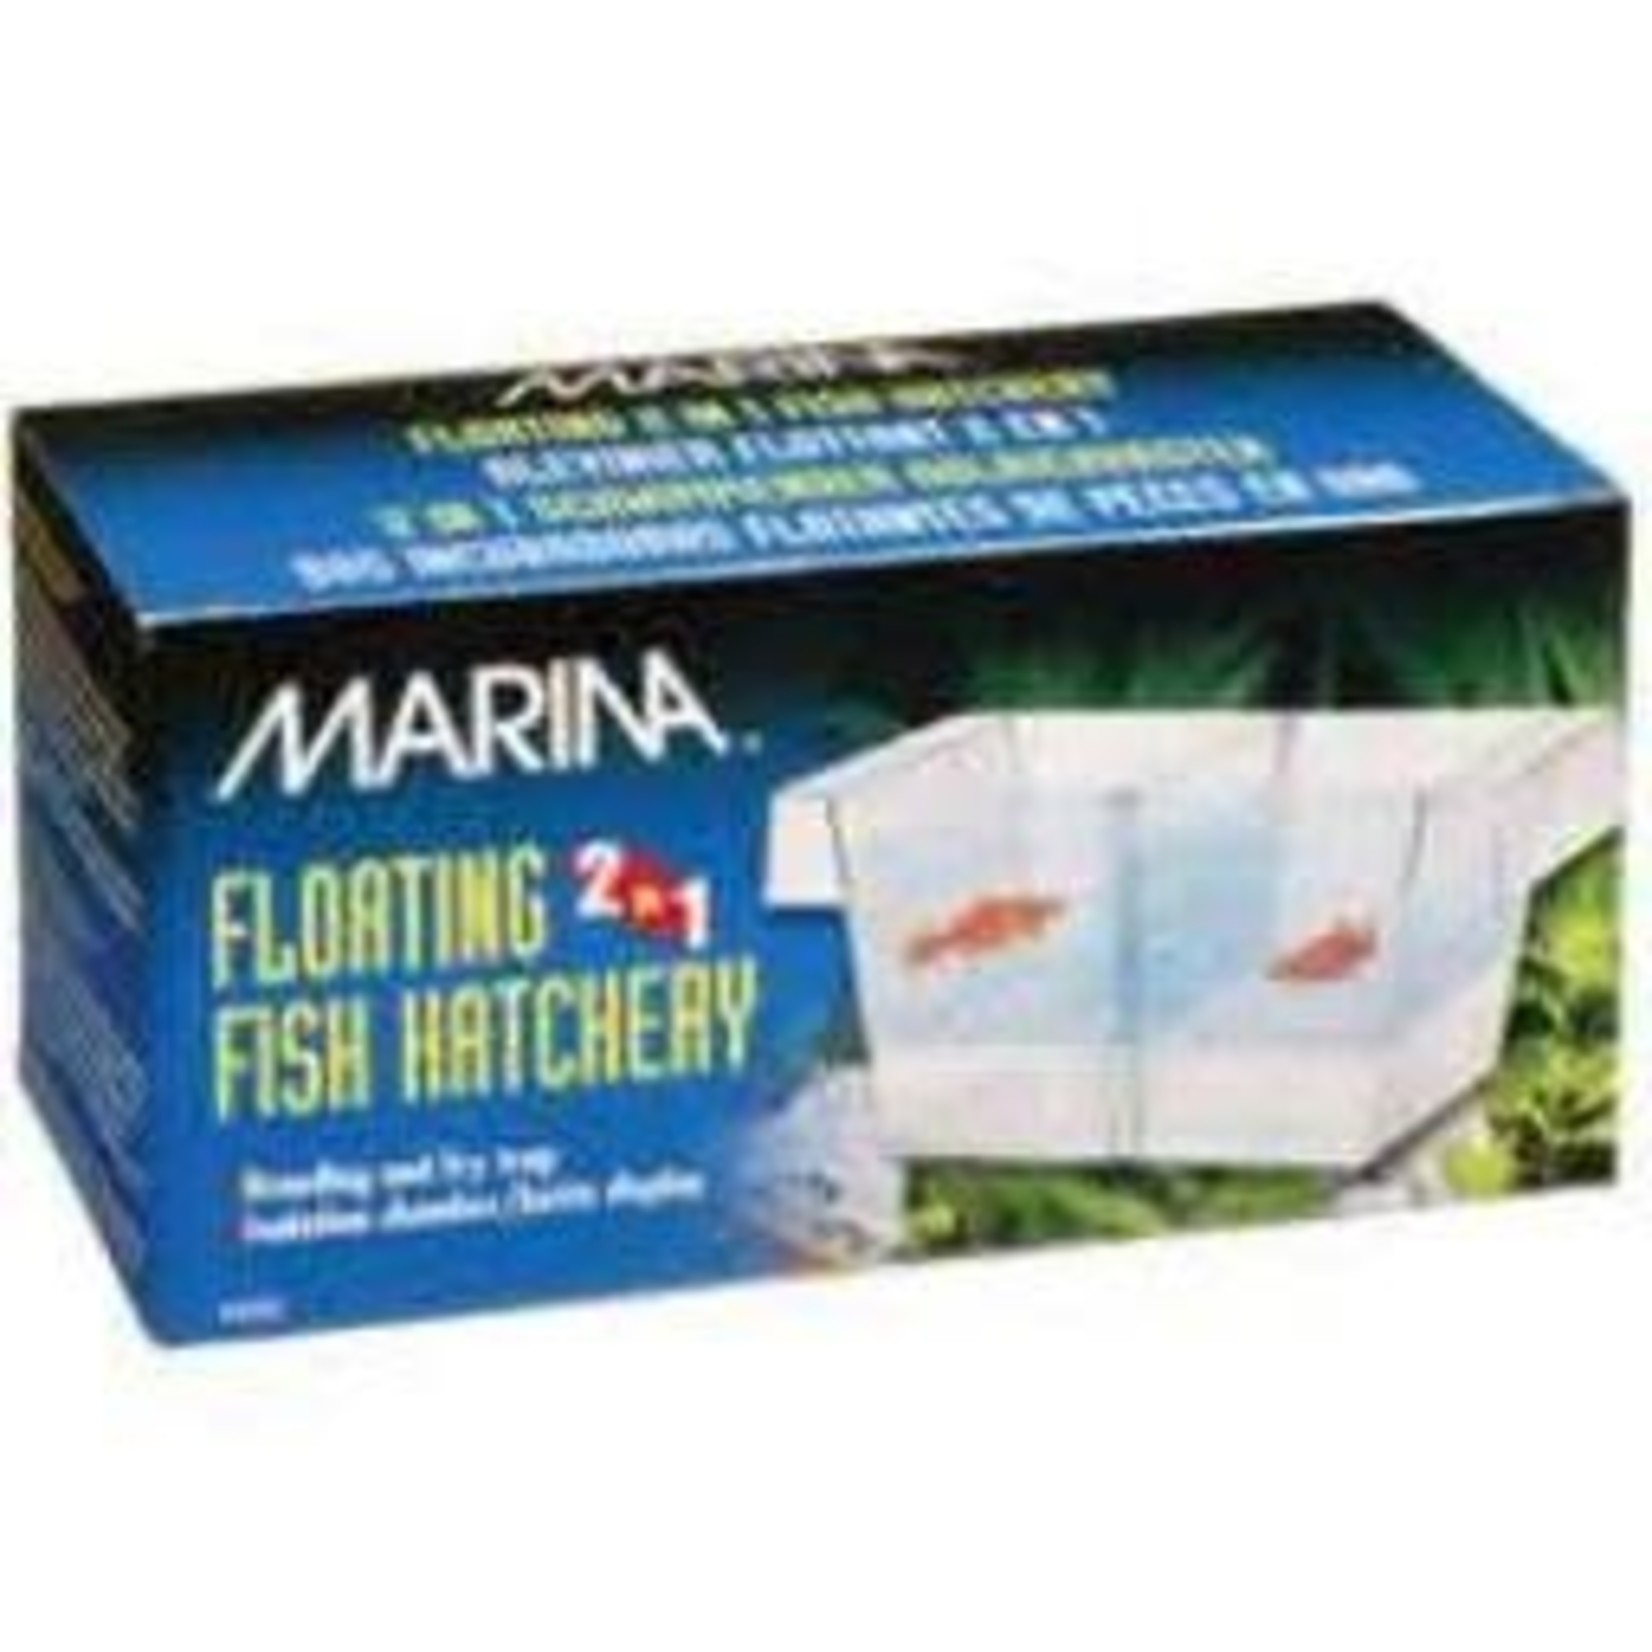 MARINA Marina 2 in 1 Fish Hatchery